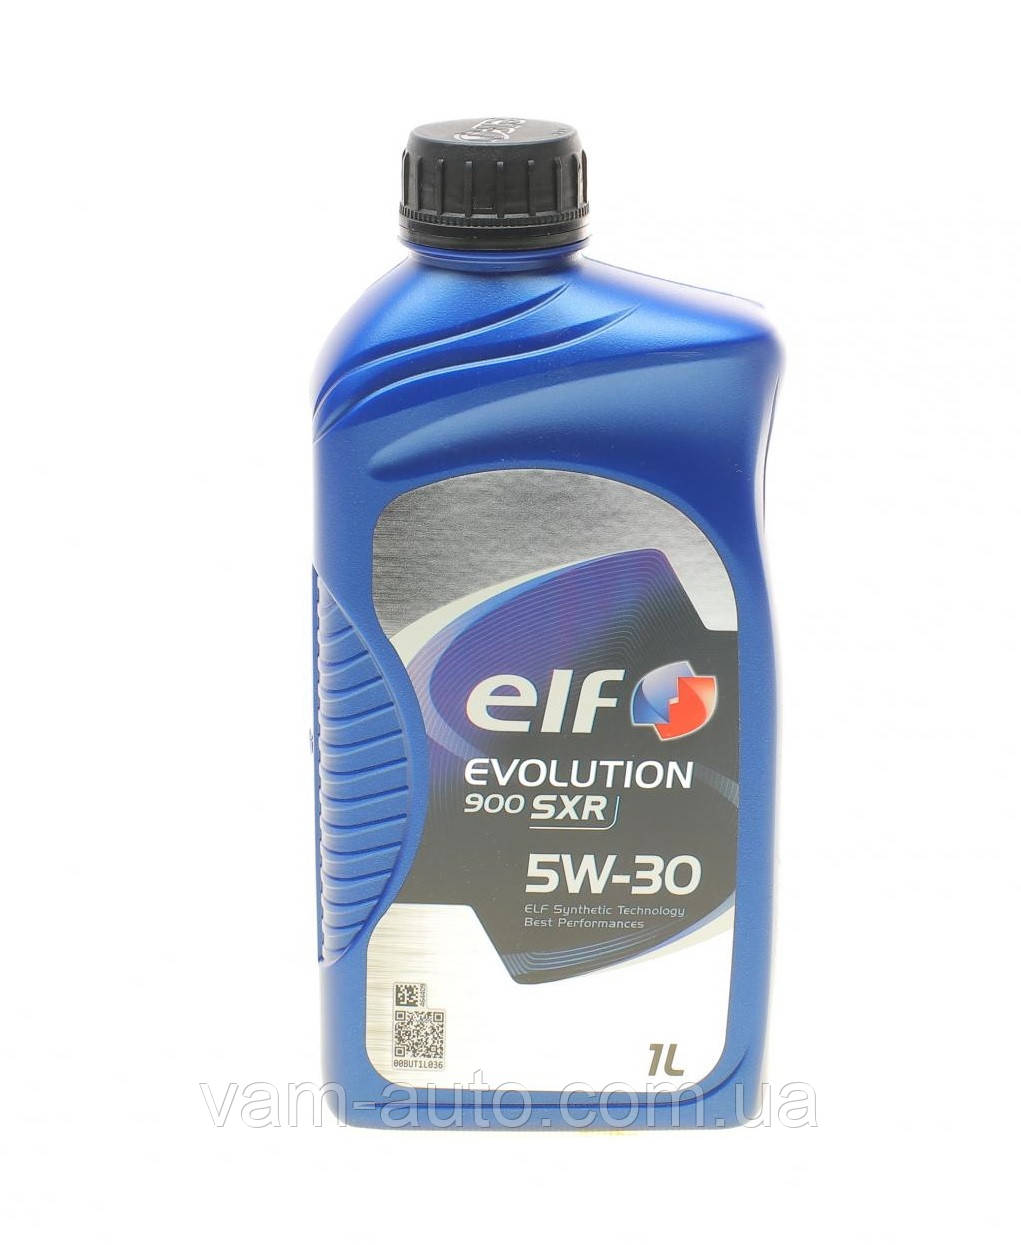 Масло 5W30 Evolution 900 SXR (1L) (ACEA A5/B5; API SM/CF; RN 0700; FORD WSS-M2C 913-D) —  ELF